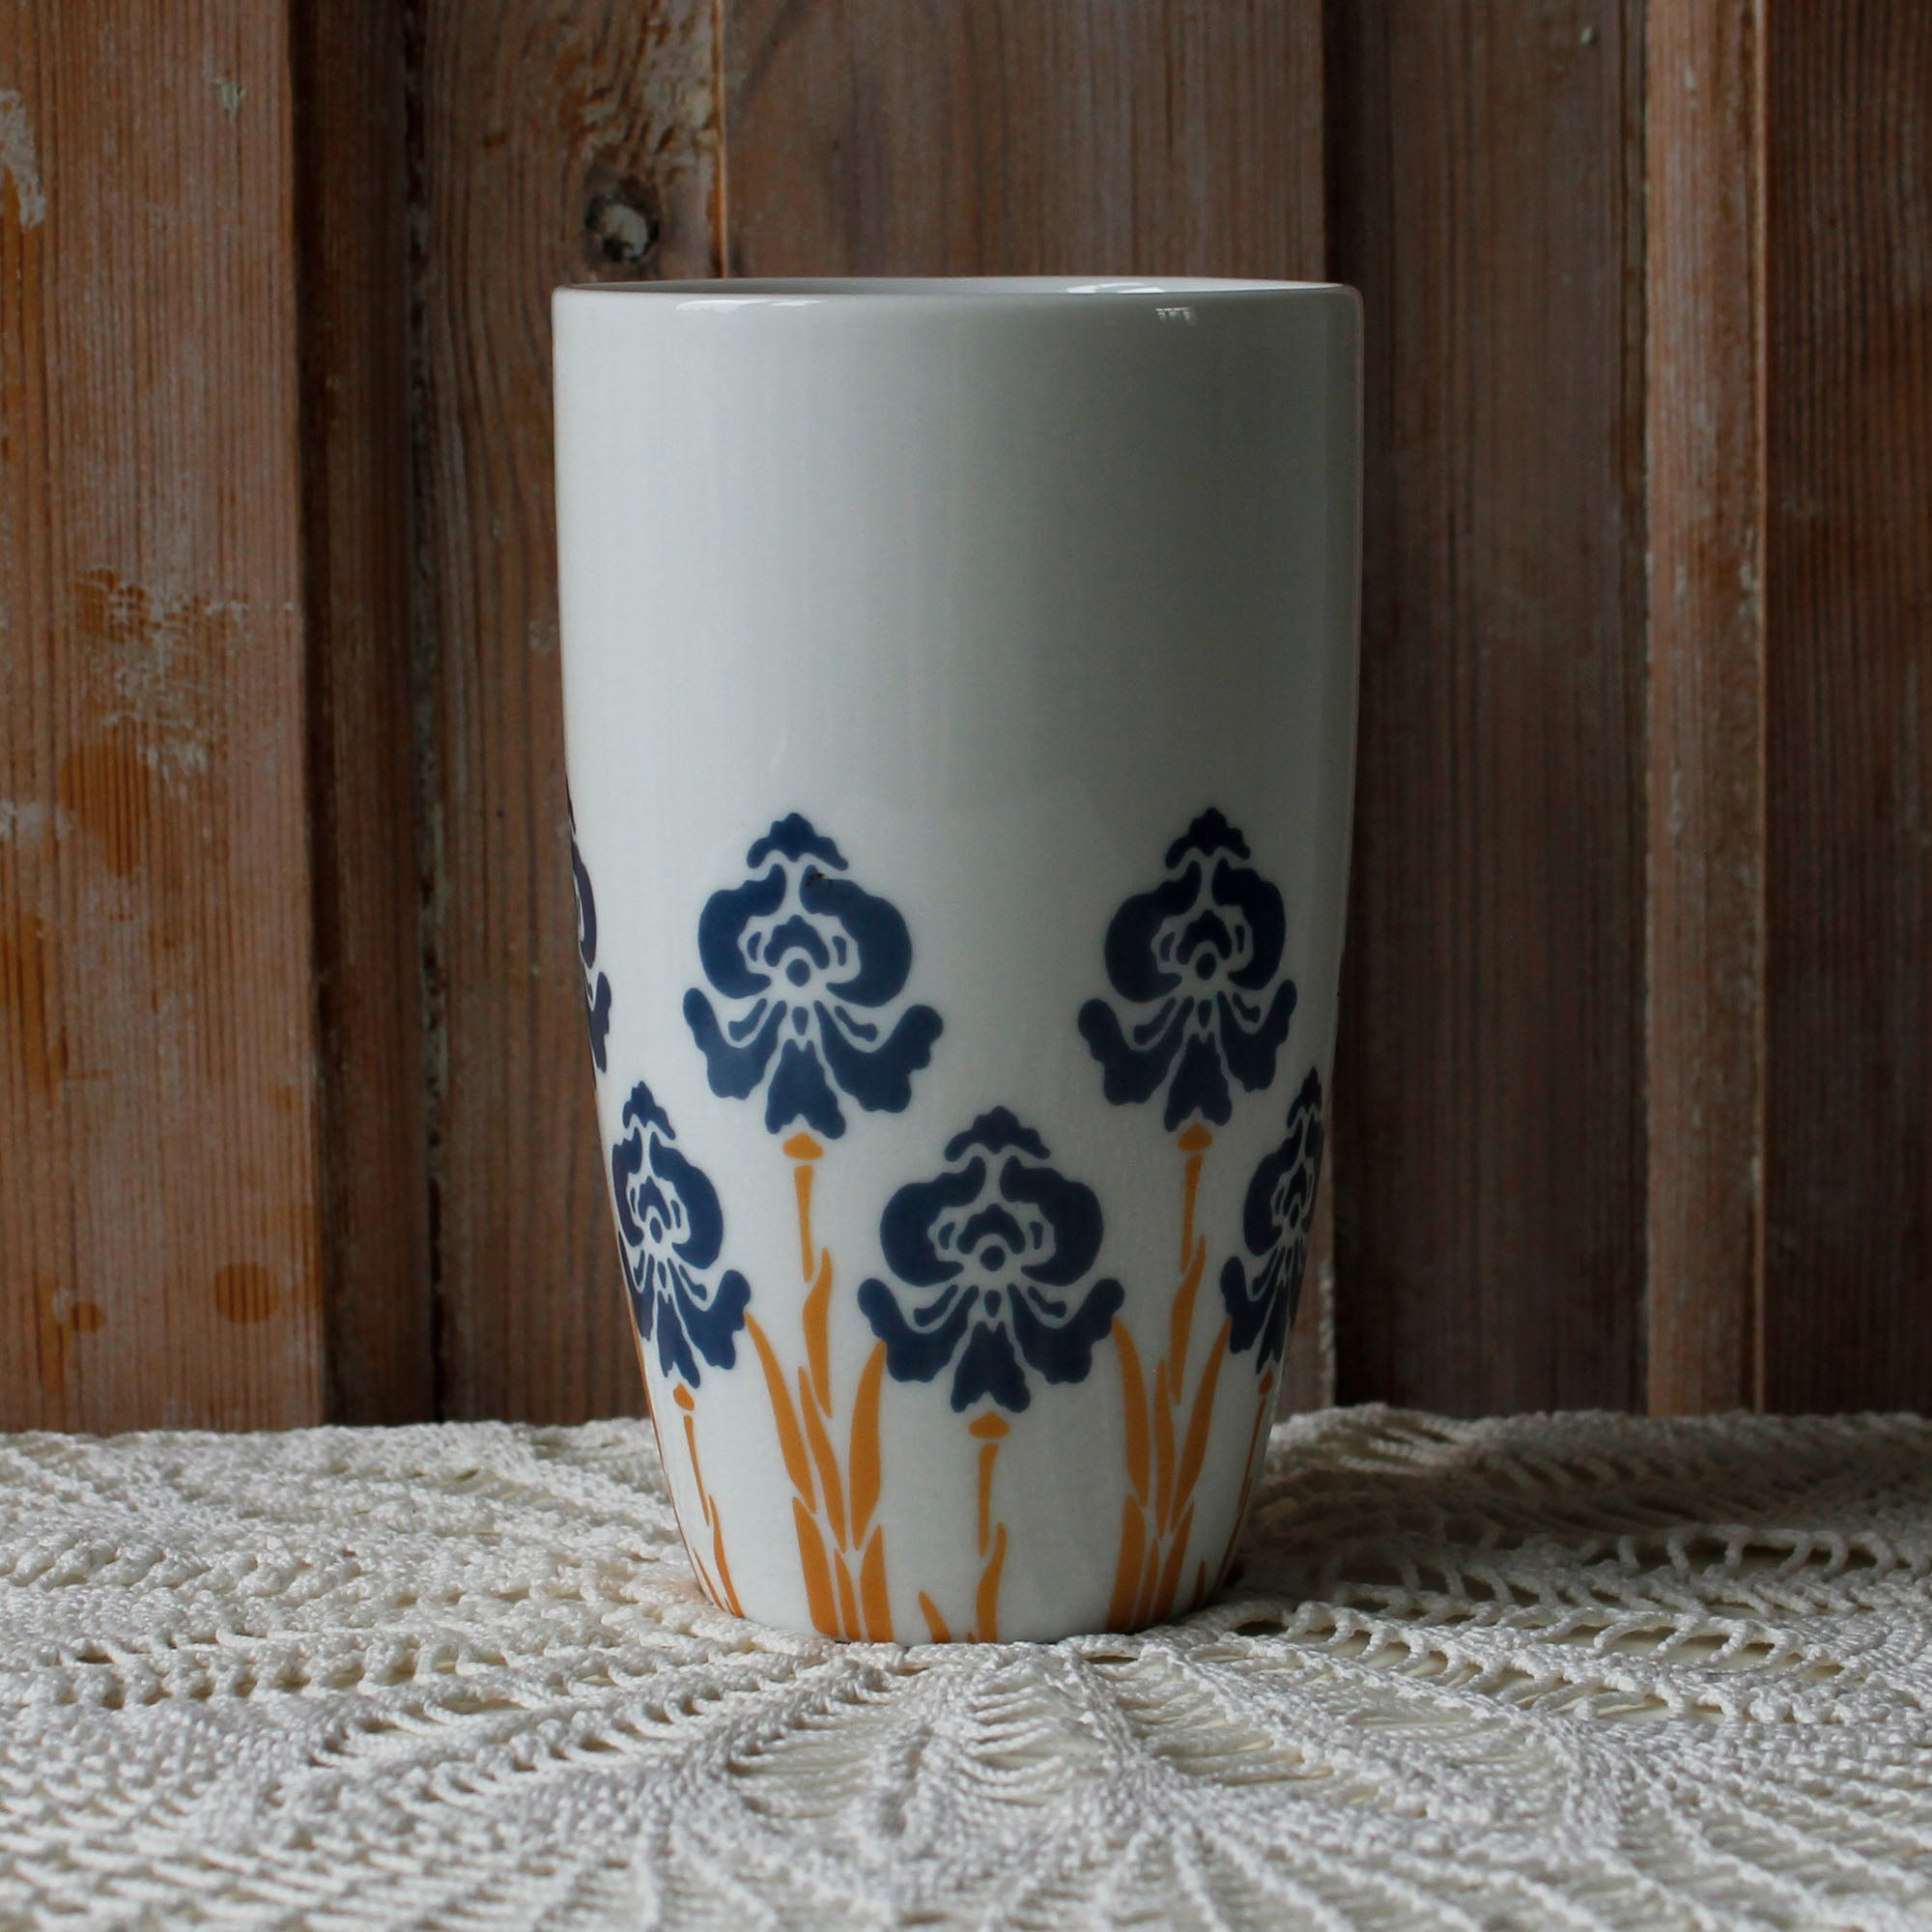 LV Blue Art Coffee Mug